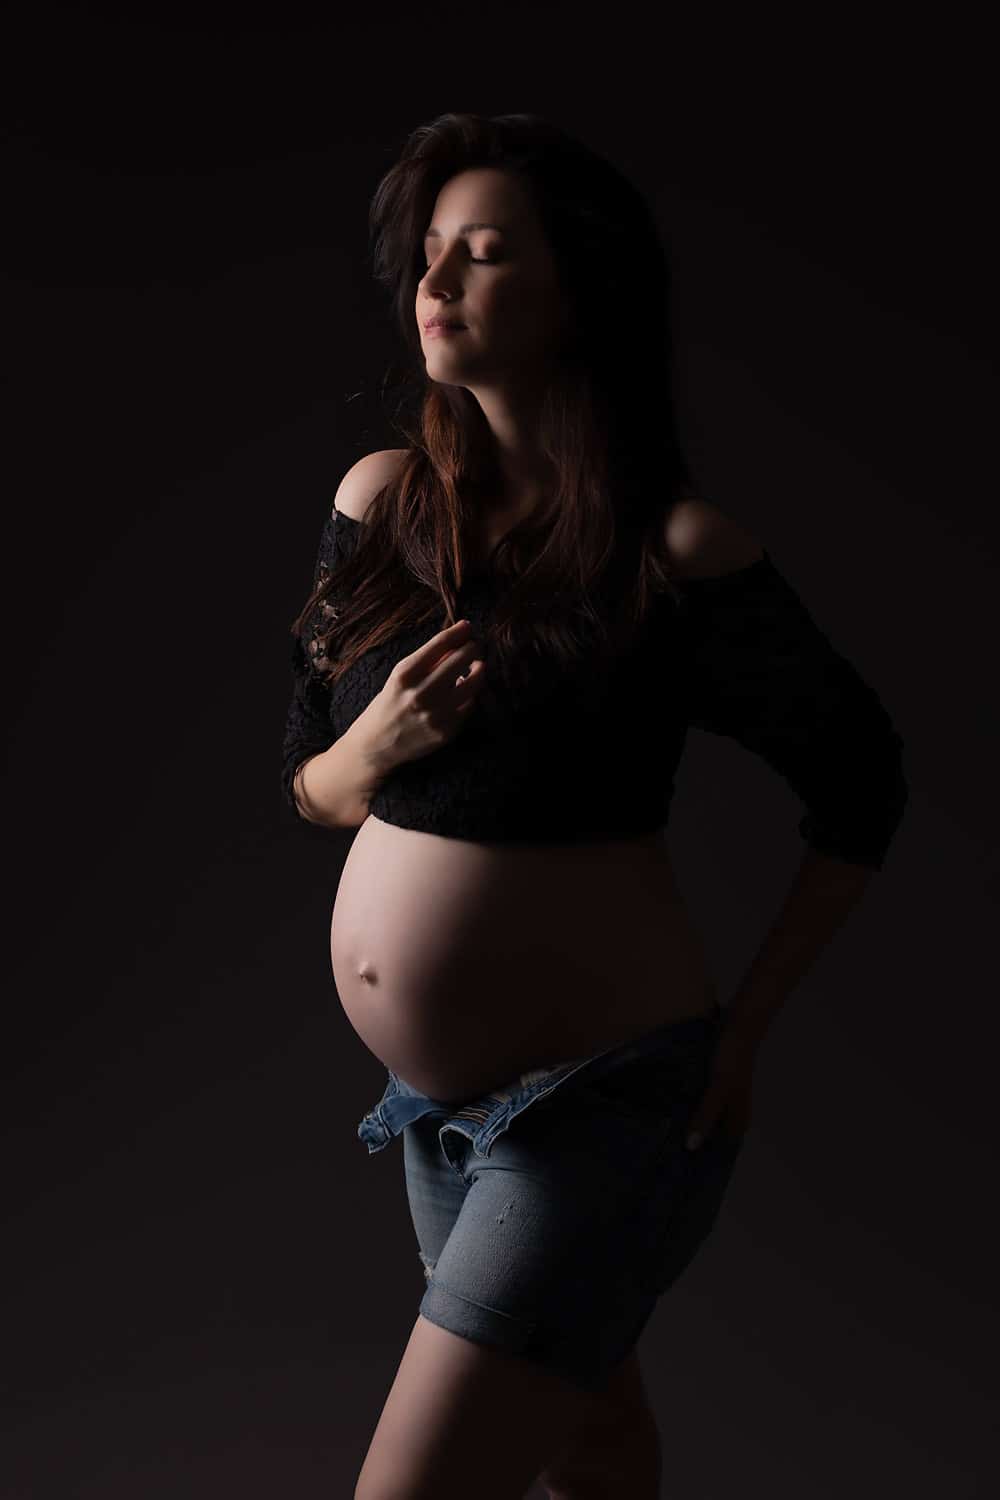 צילומים אומנותיים לנשים בהריון